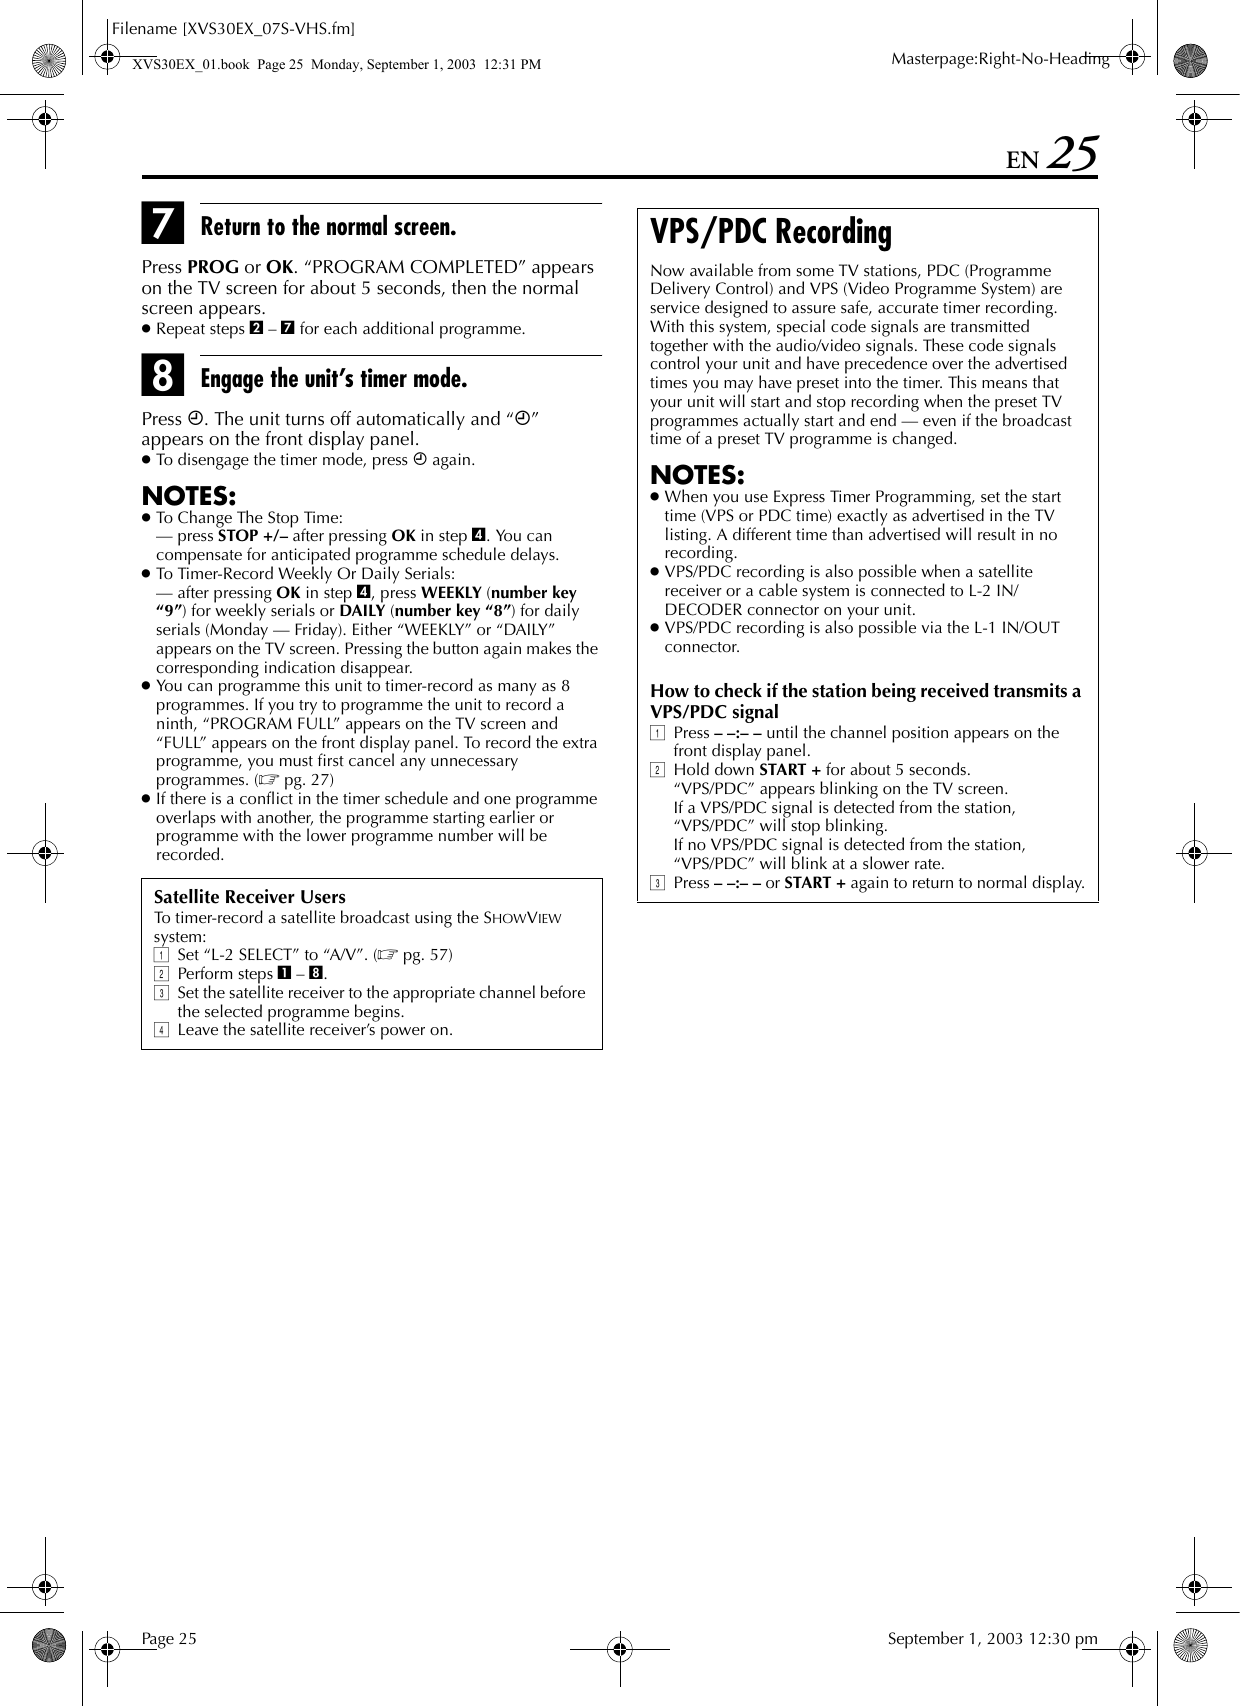 JVC HR XVS30E User Manual LPT0860 001A